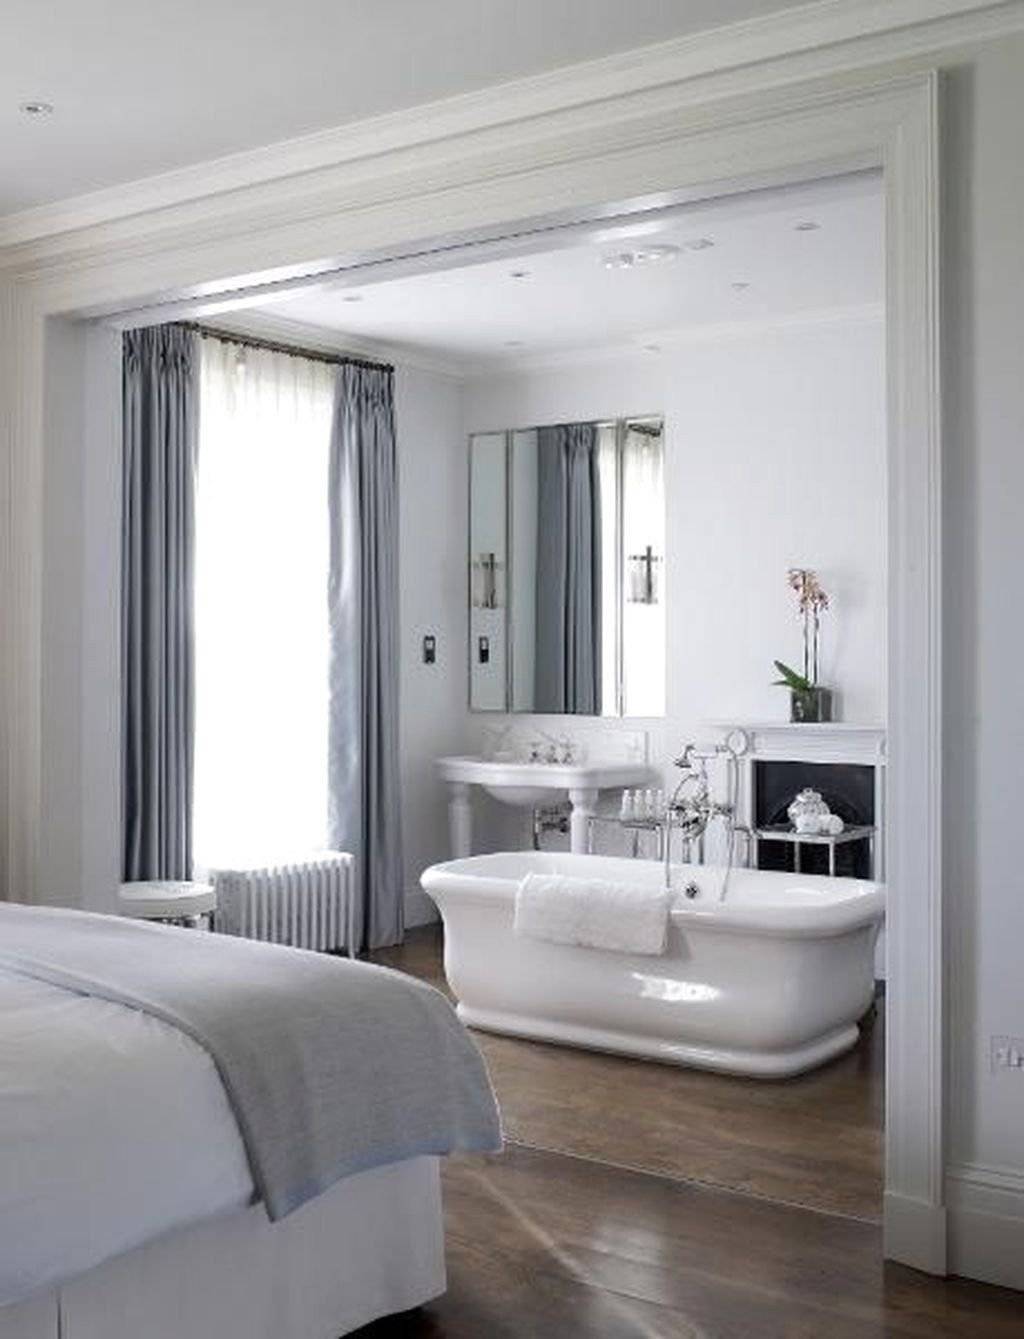 Ванная в спальне - 120 фото креативных дизайнерских решений для спальни